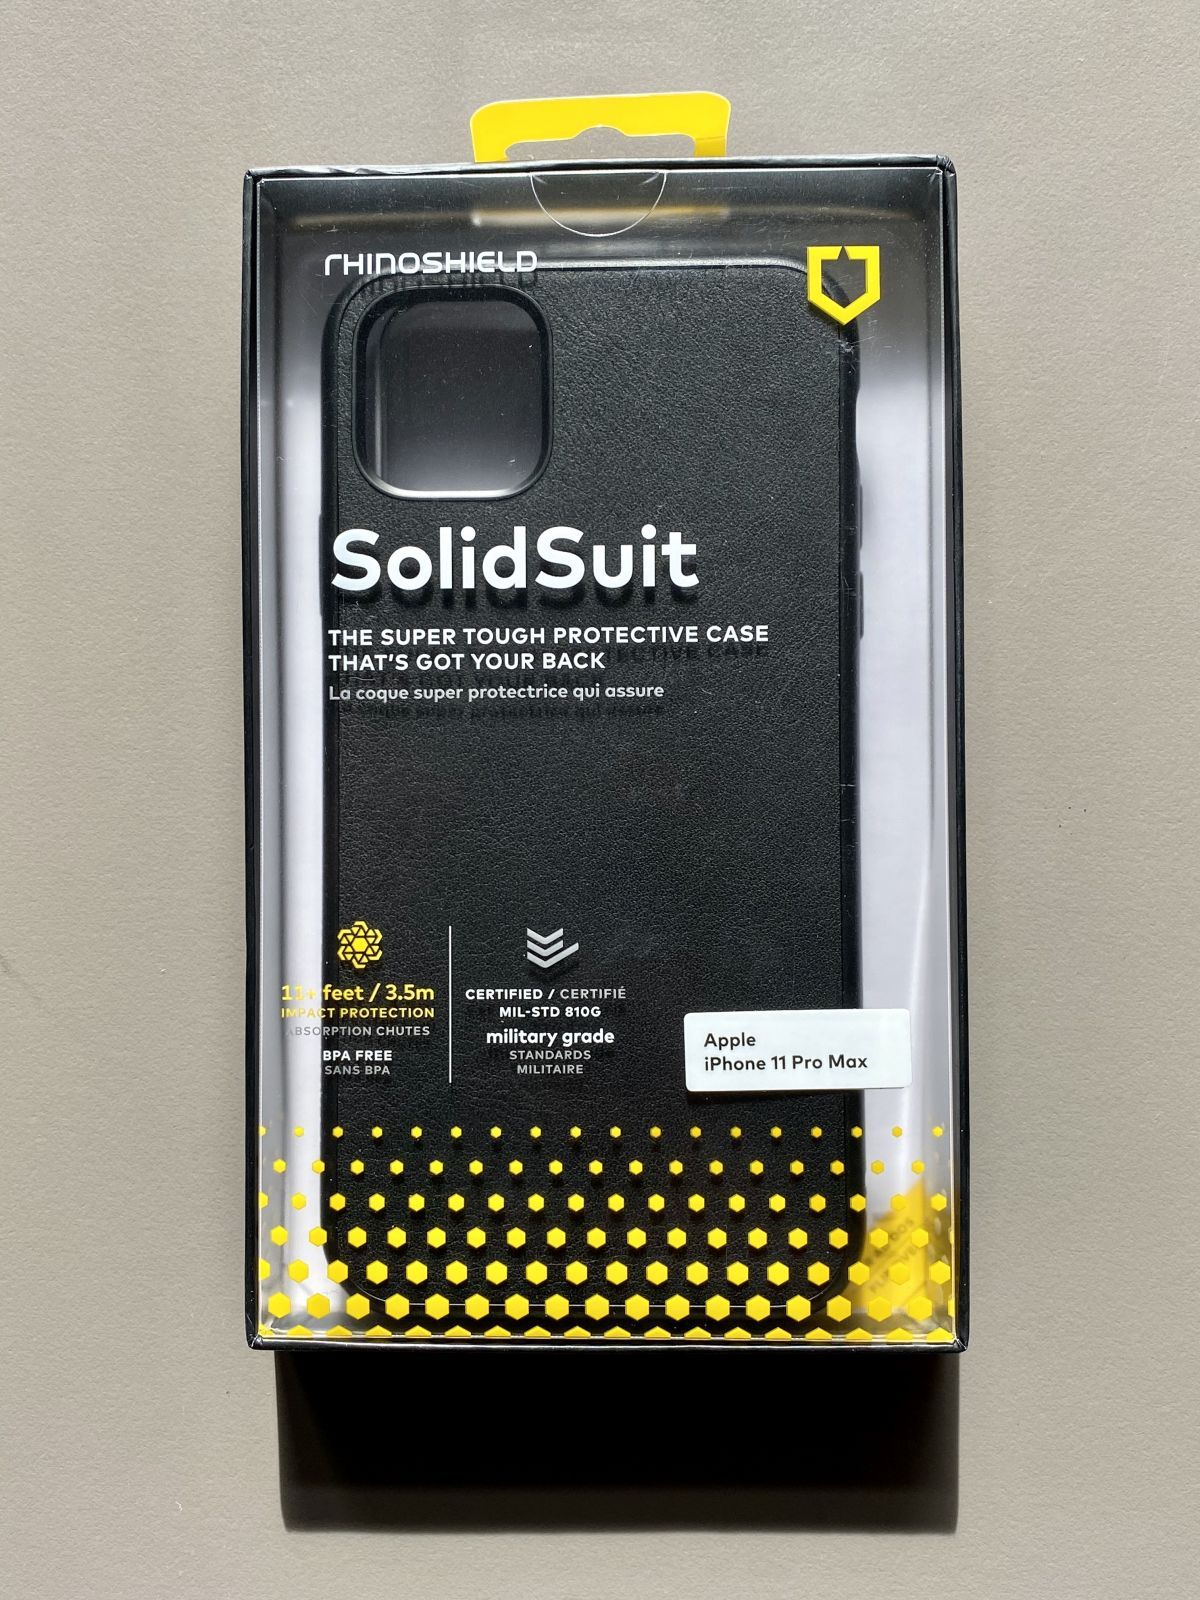 Rhinoshield : test de la protection SolidSuit pour iPhone 11 Pro Max -  iPhone Soft